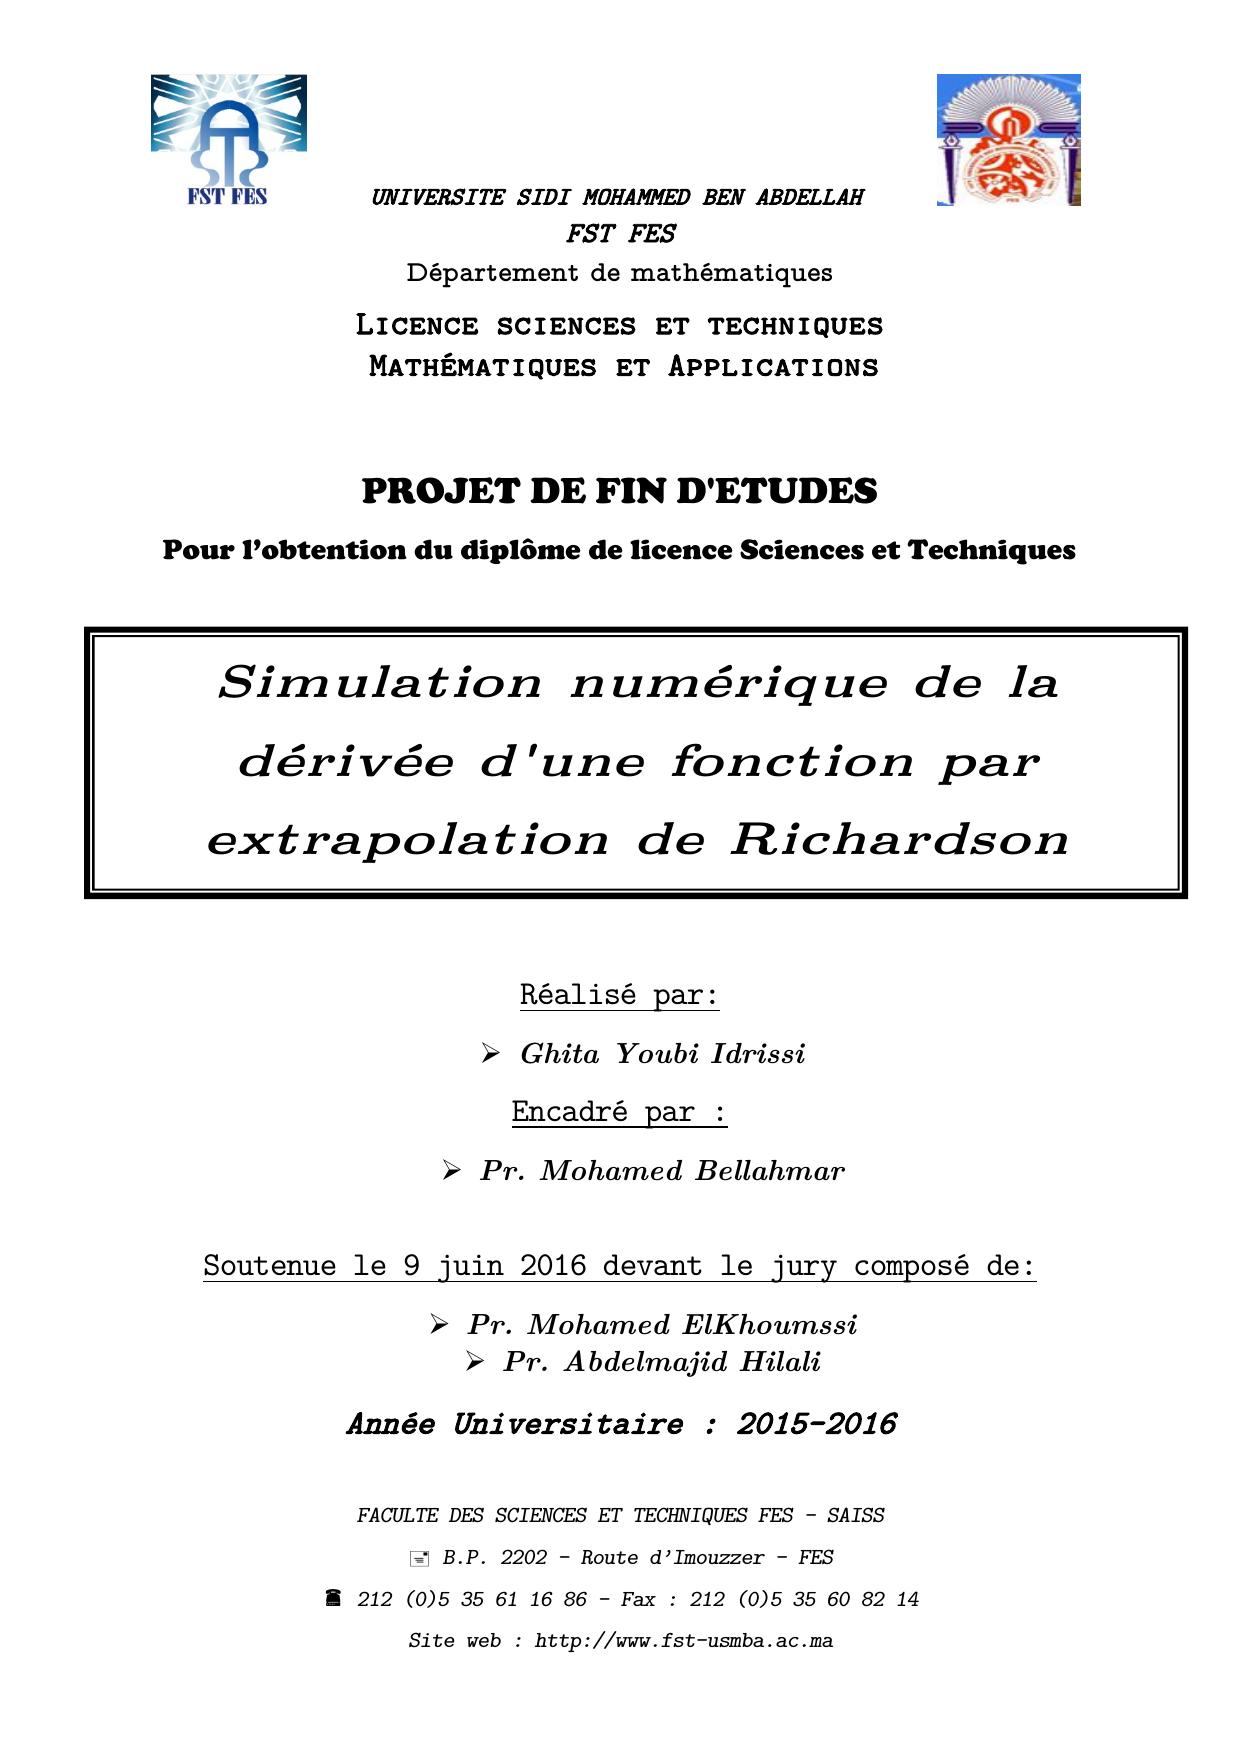 Simulation numérique de la dérivée d'une fonction par extrapolation de Richardson